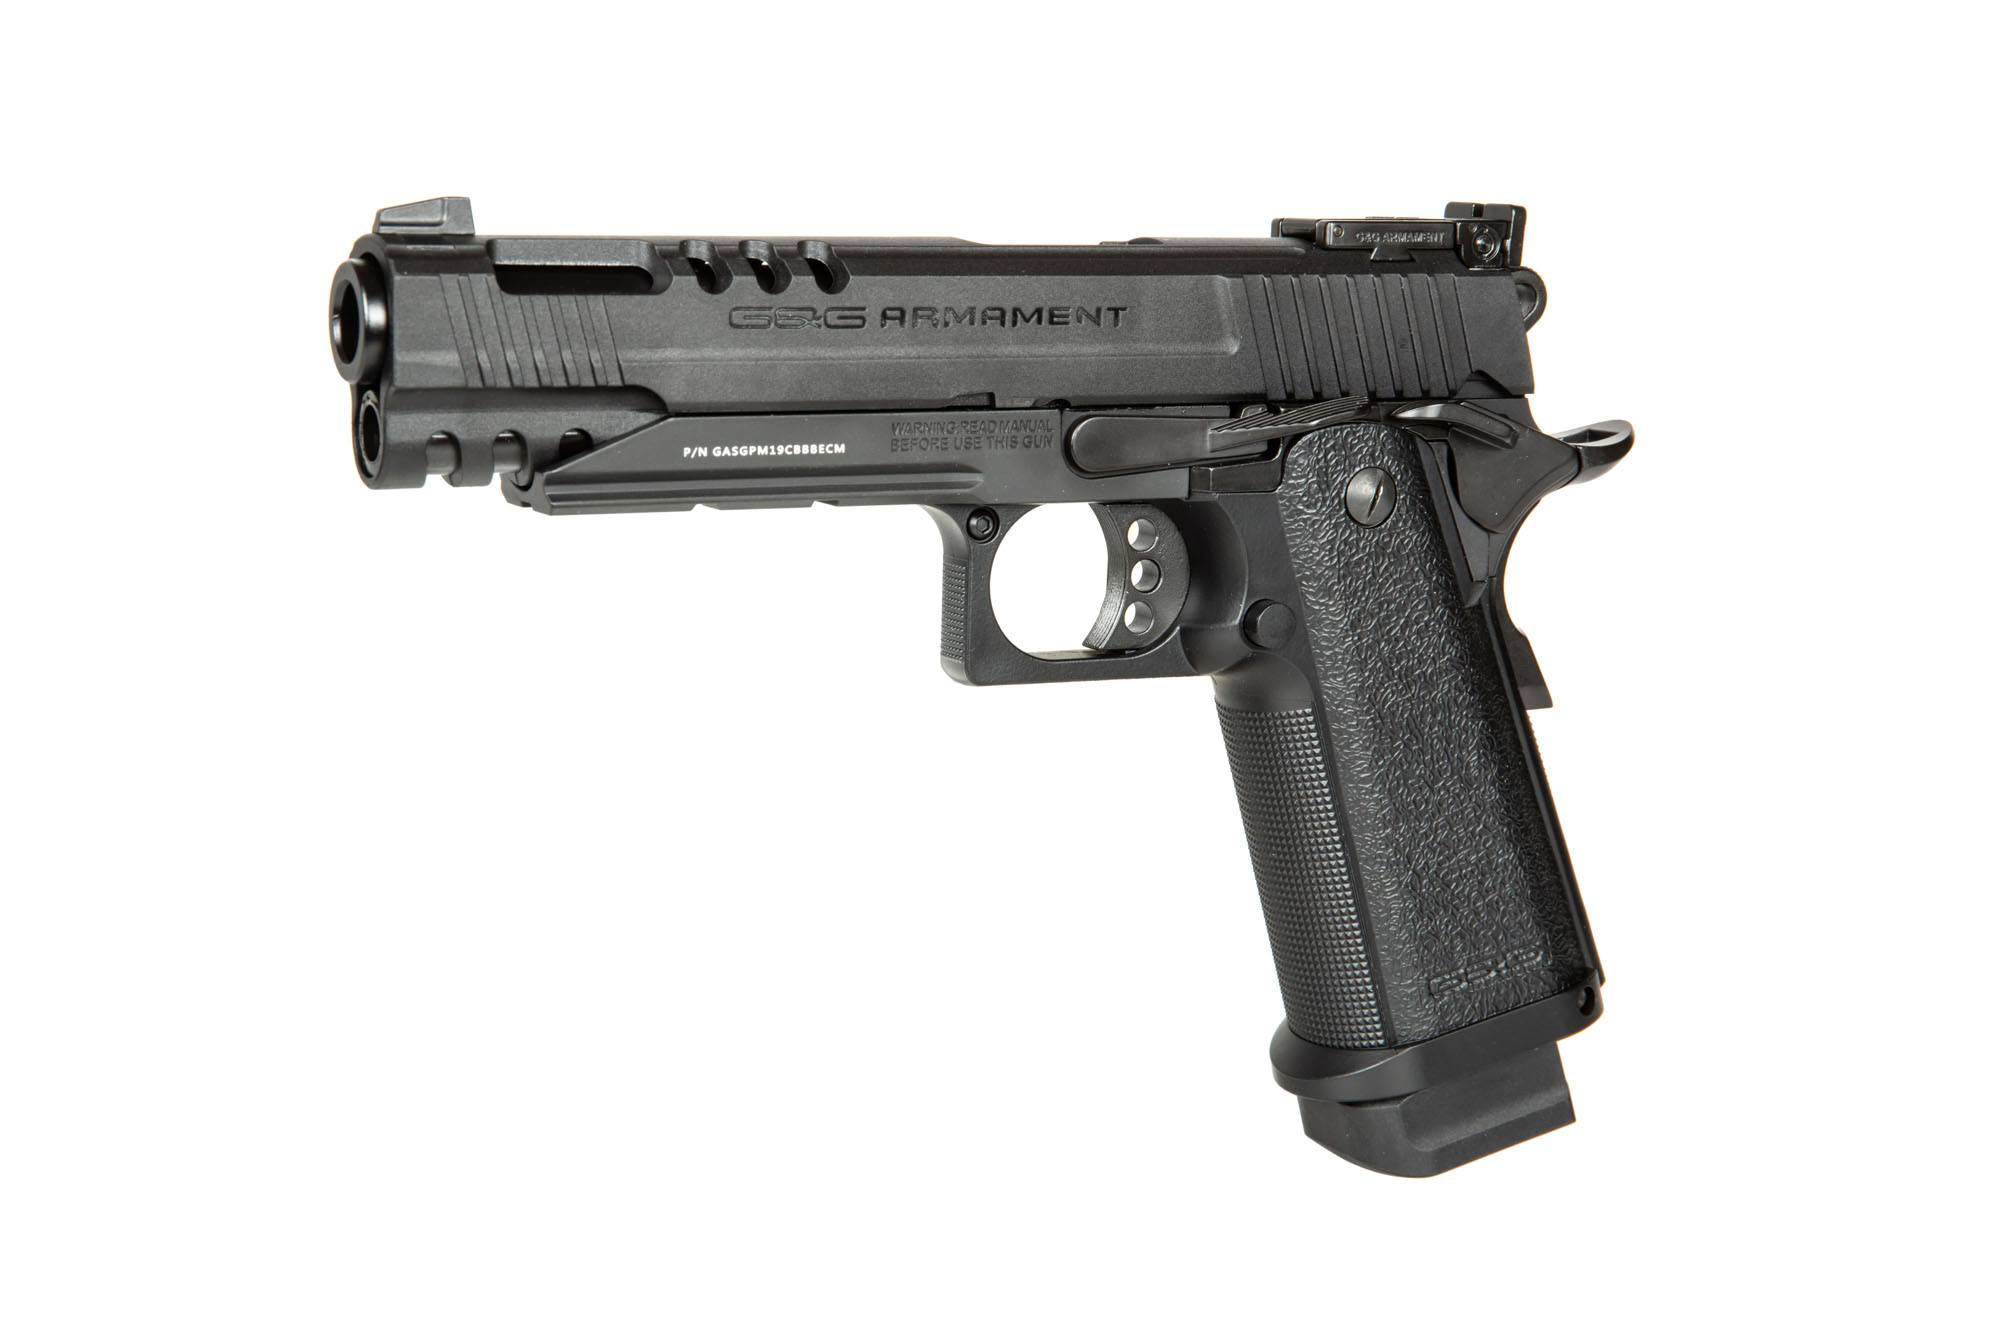 GPM1911CP G&G Gas pistol